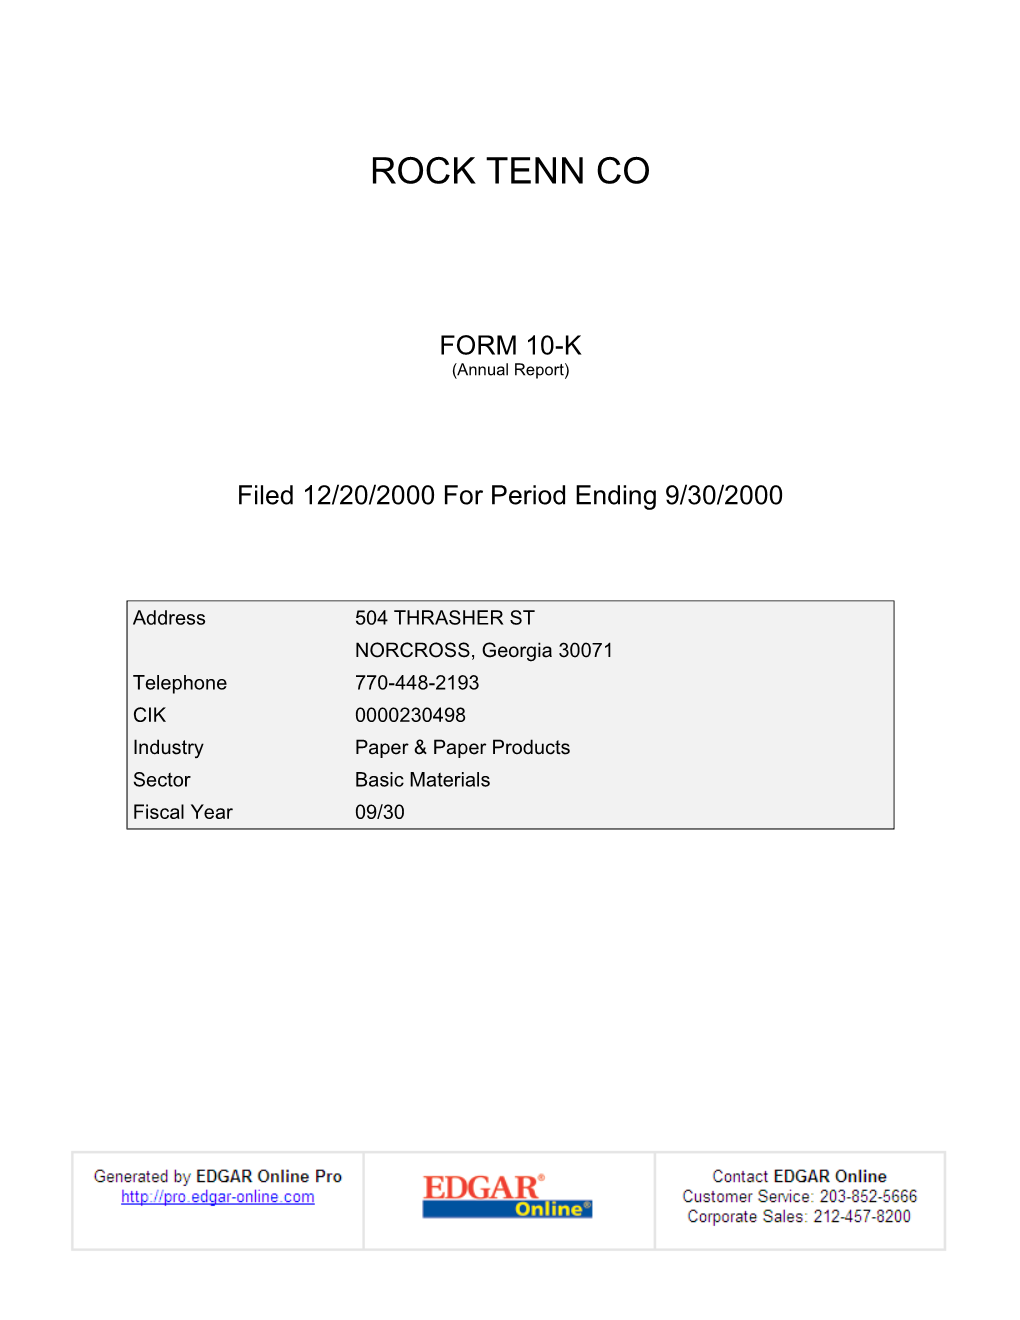 Rock Tenn Co